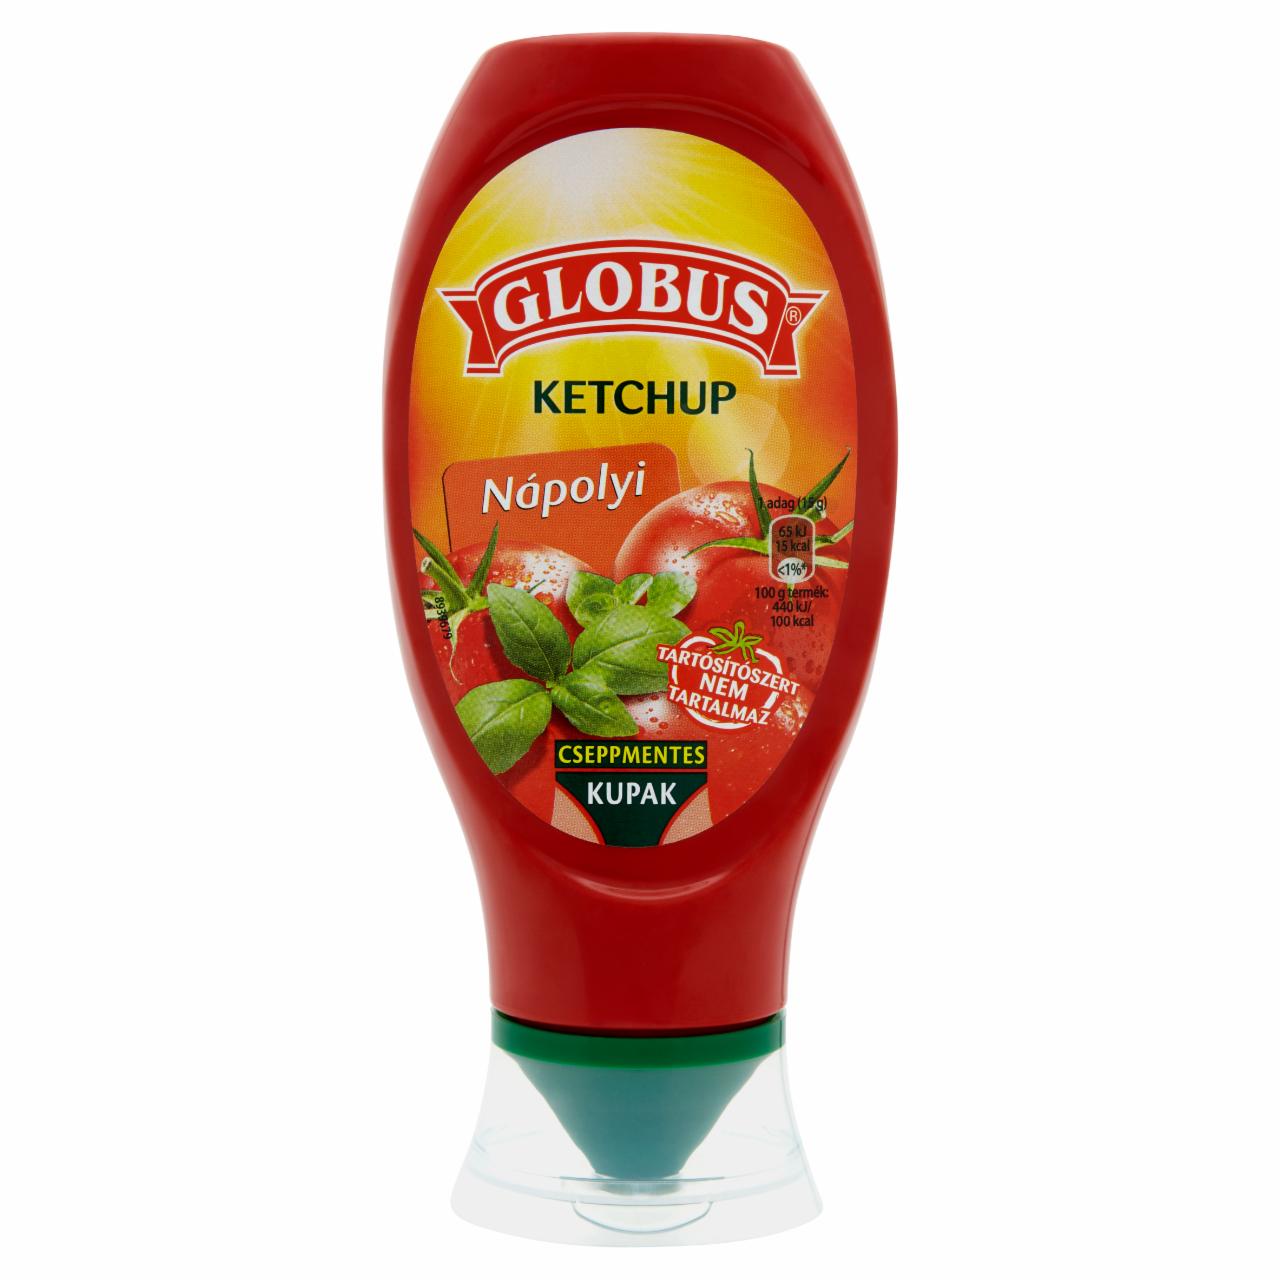 Képek - Globus nápolyi ketchup 450 g